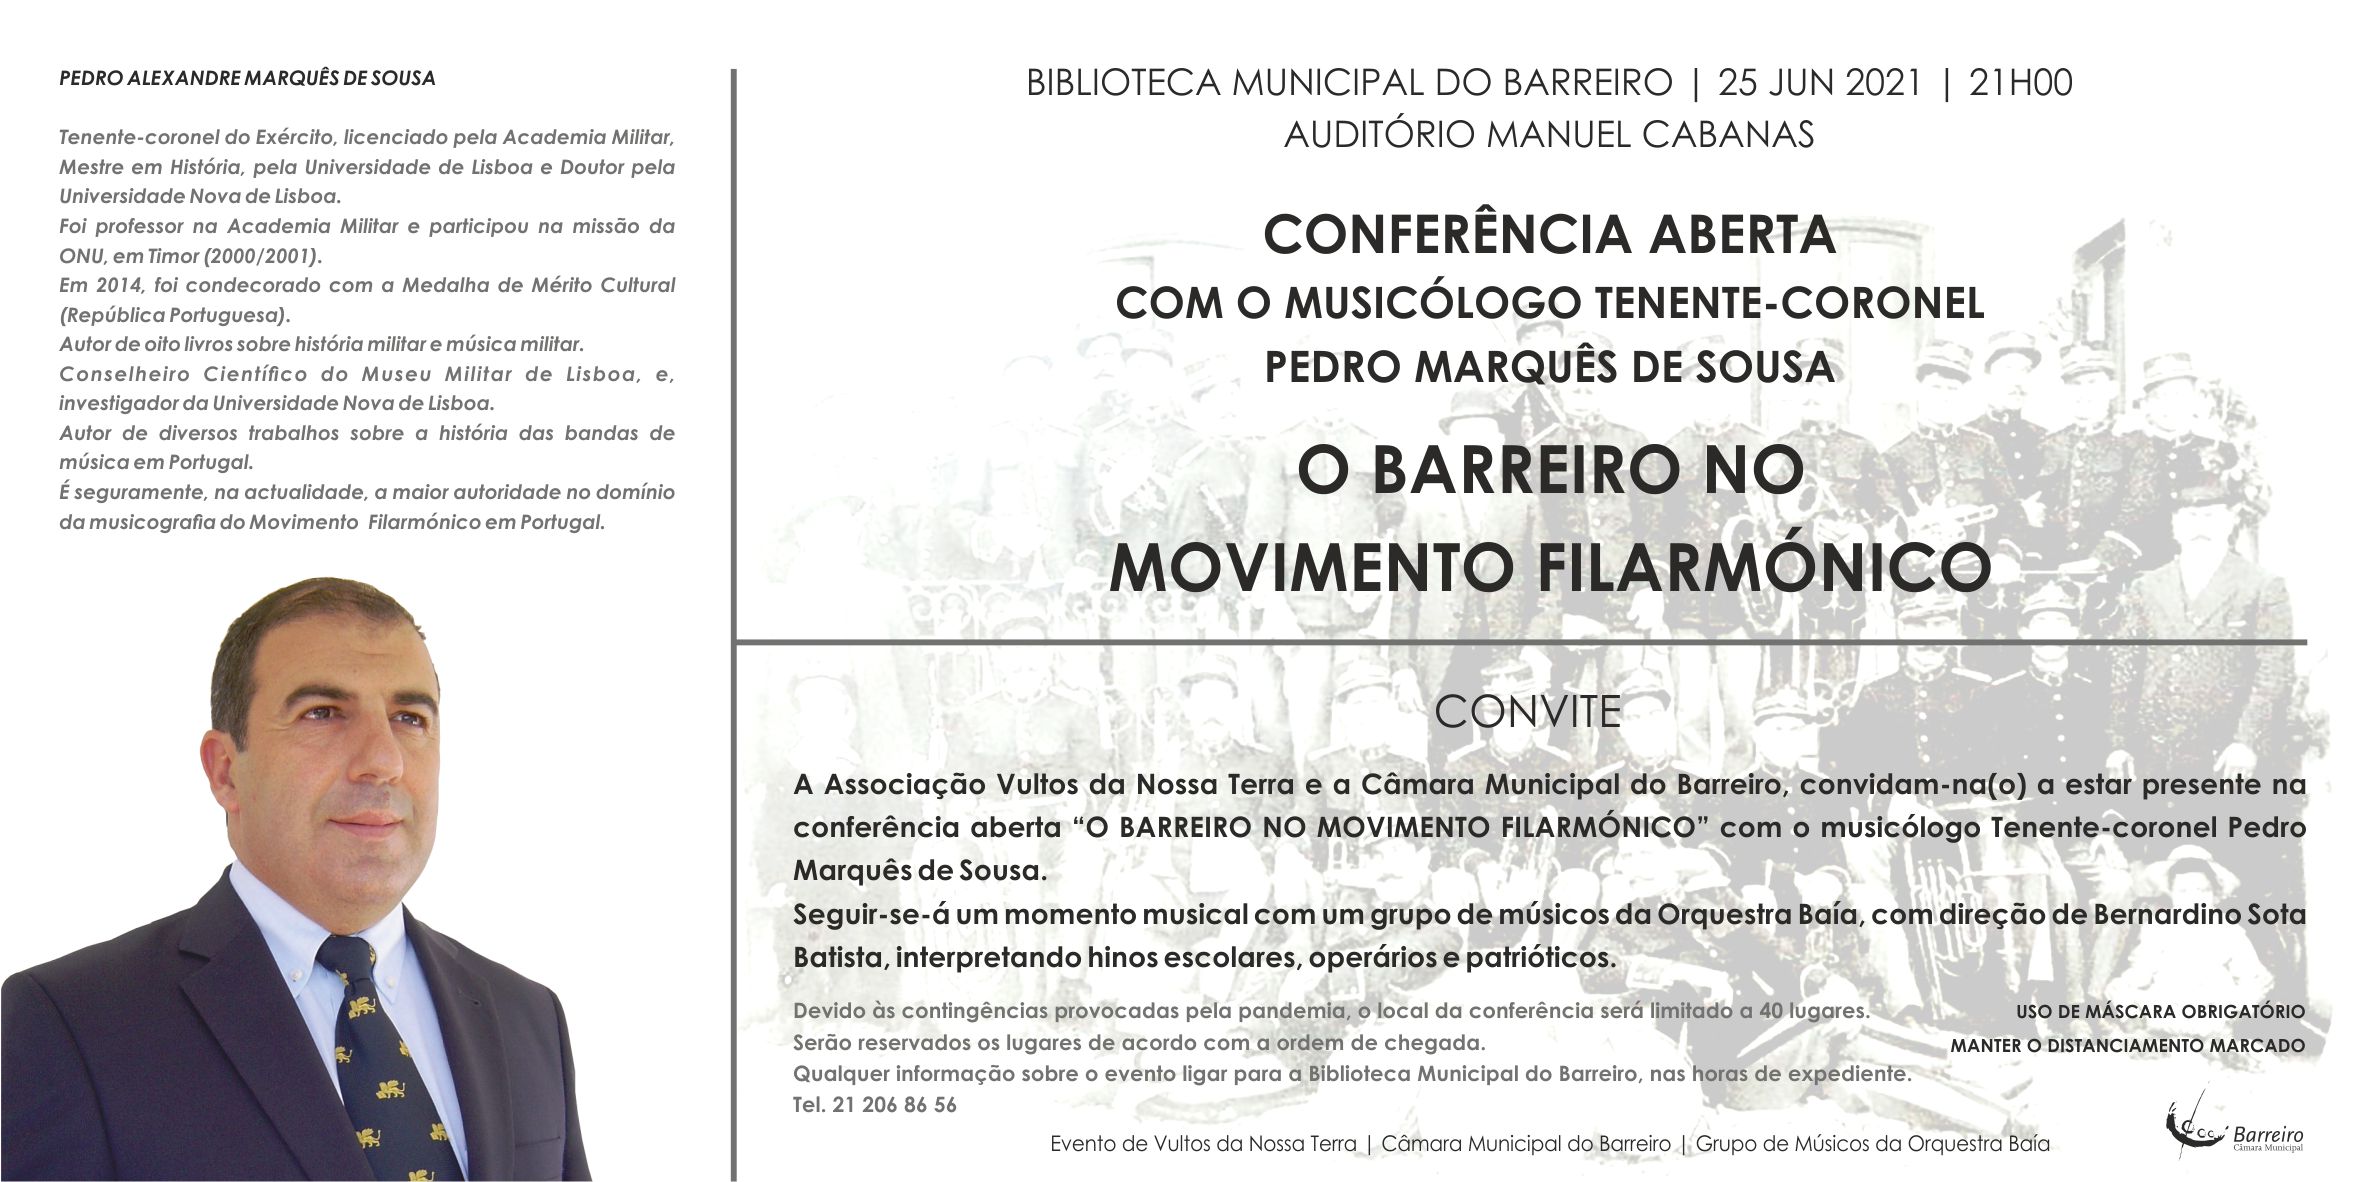 O Barreiro no Movimento Filarmónico | Conferência Aberta